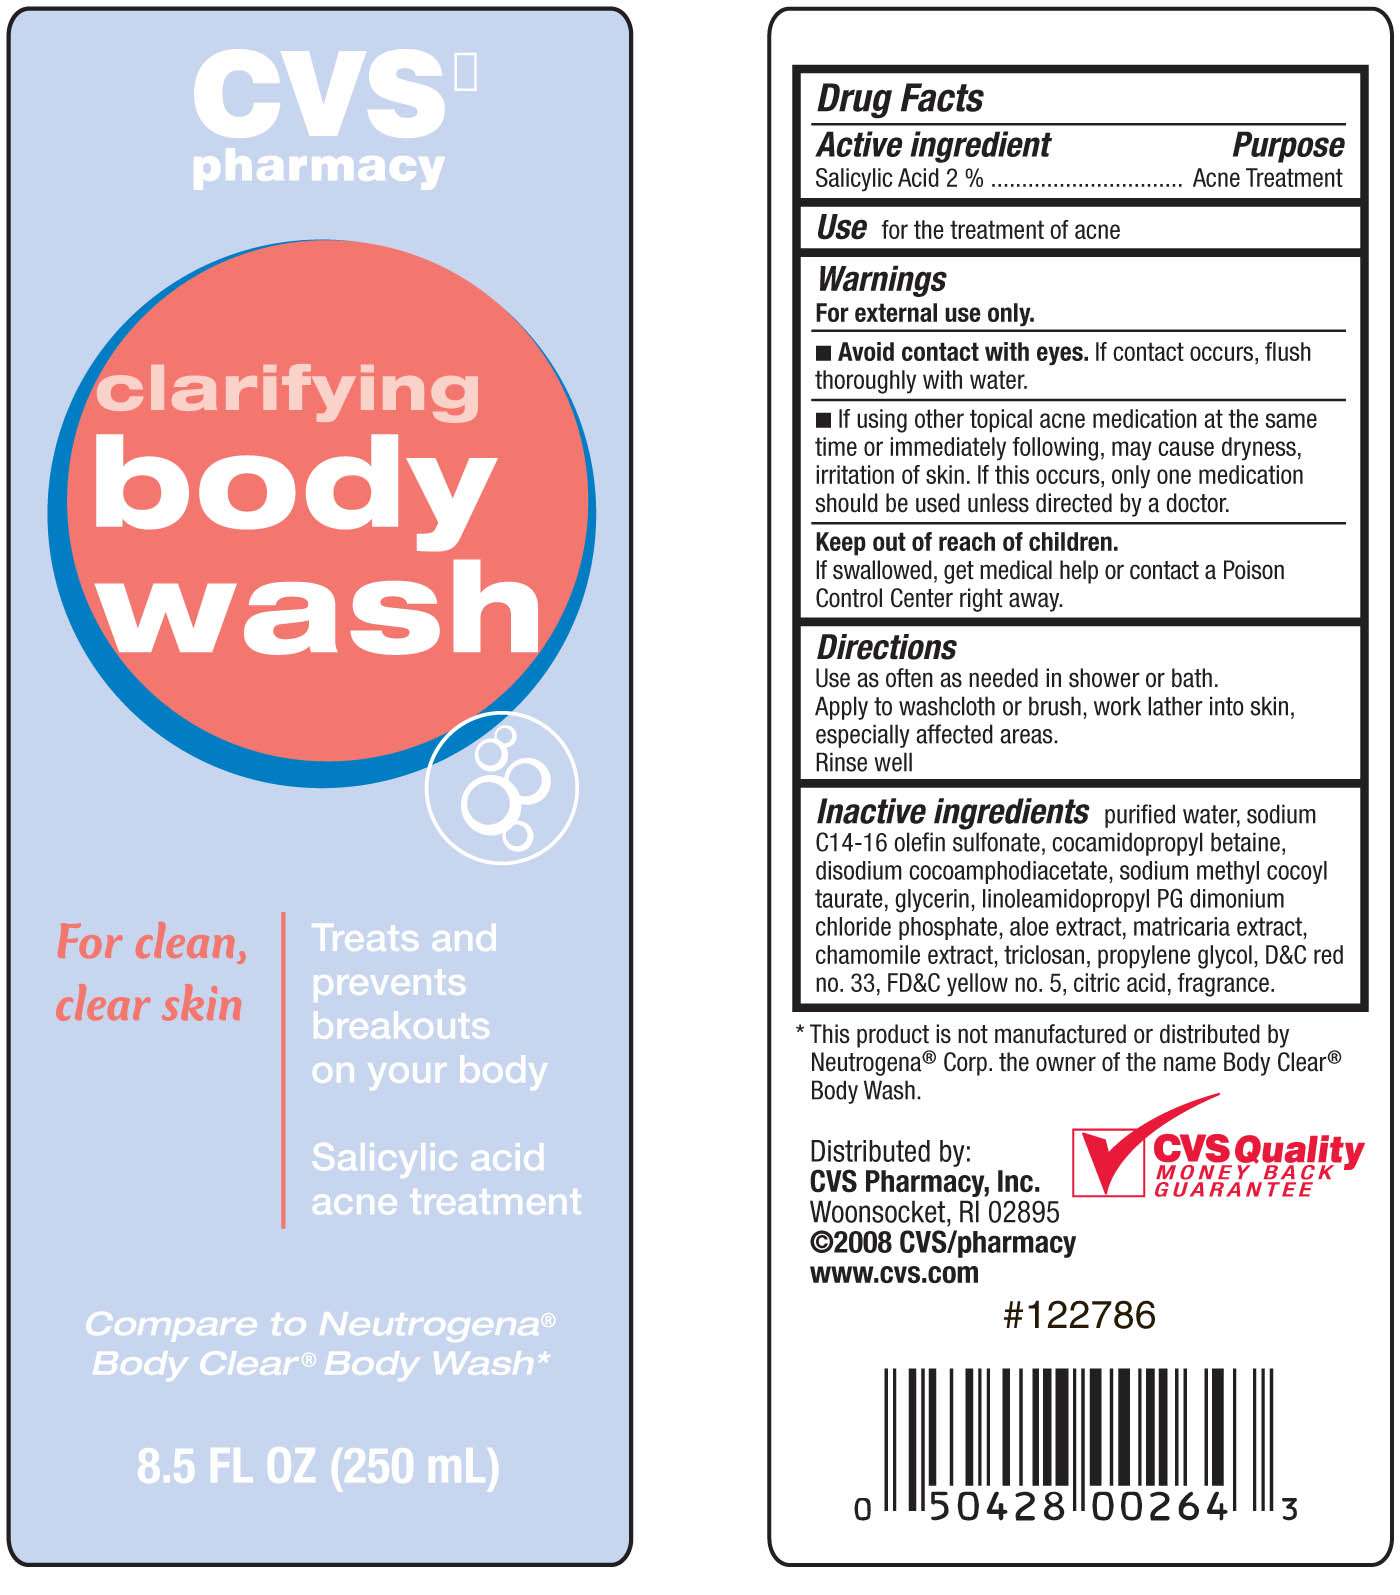 CVS Clarifying Body Wash